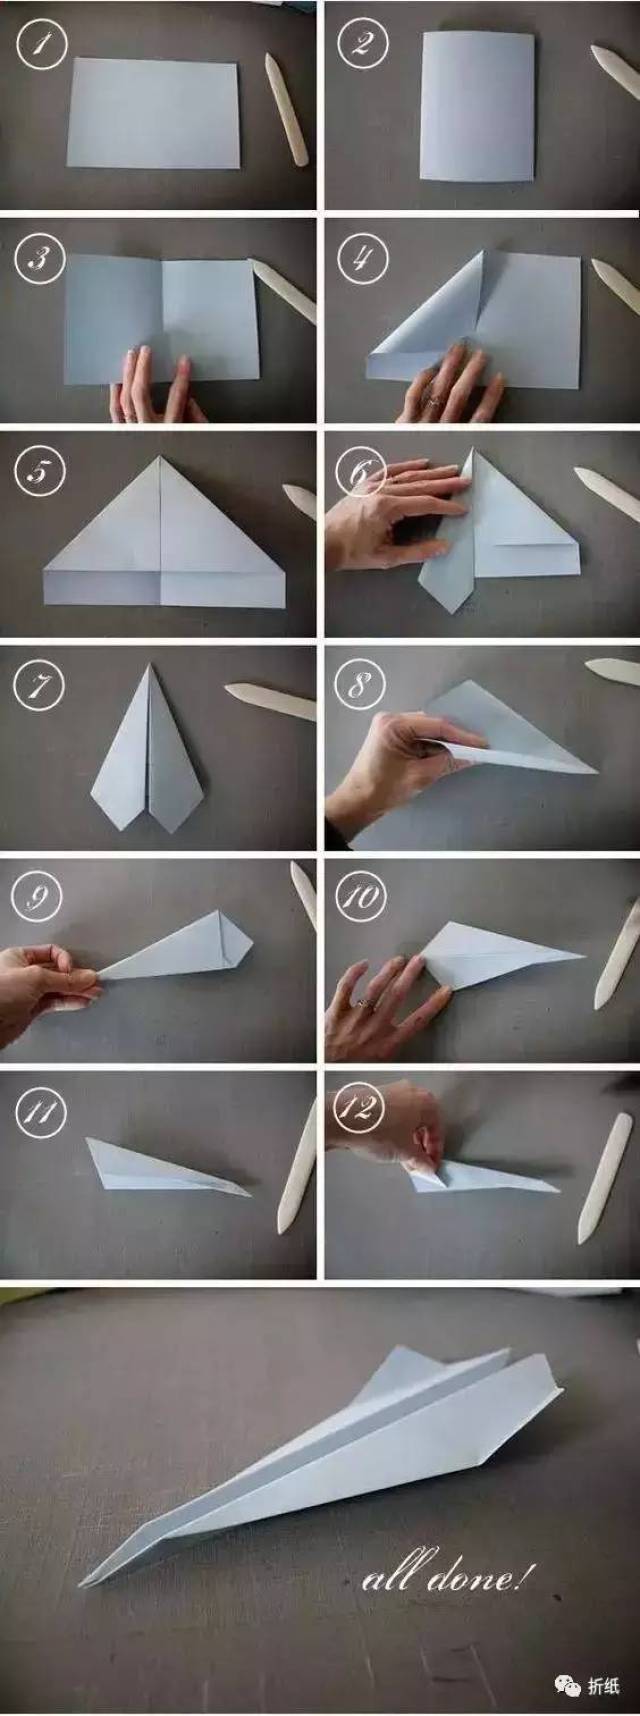 亲子手工之经典折纸,飞机星星和千纸鹤超详细教程